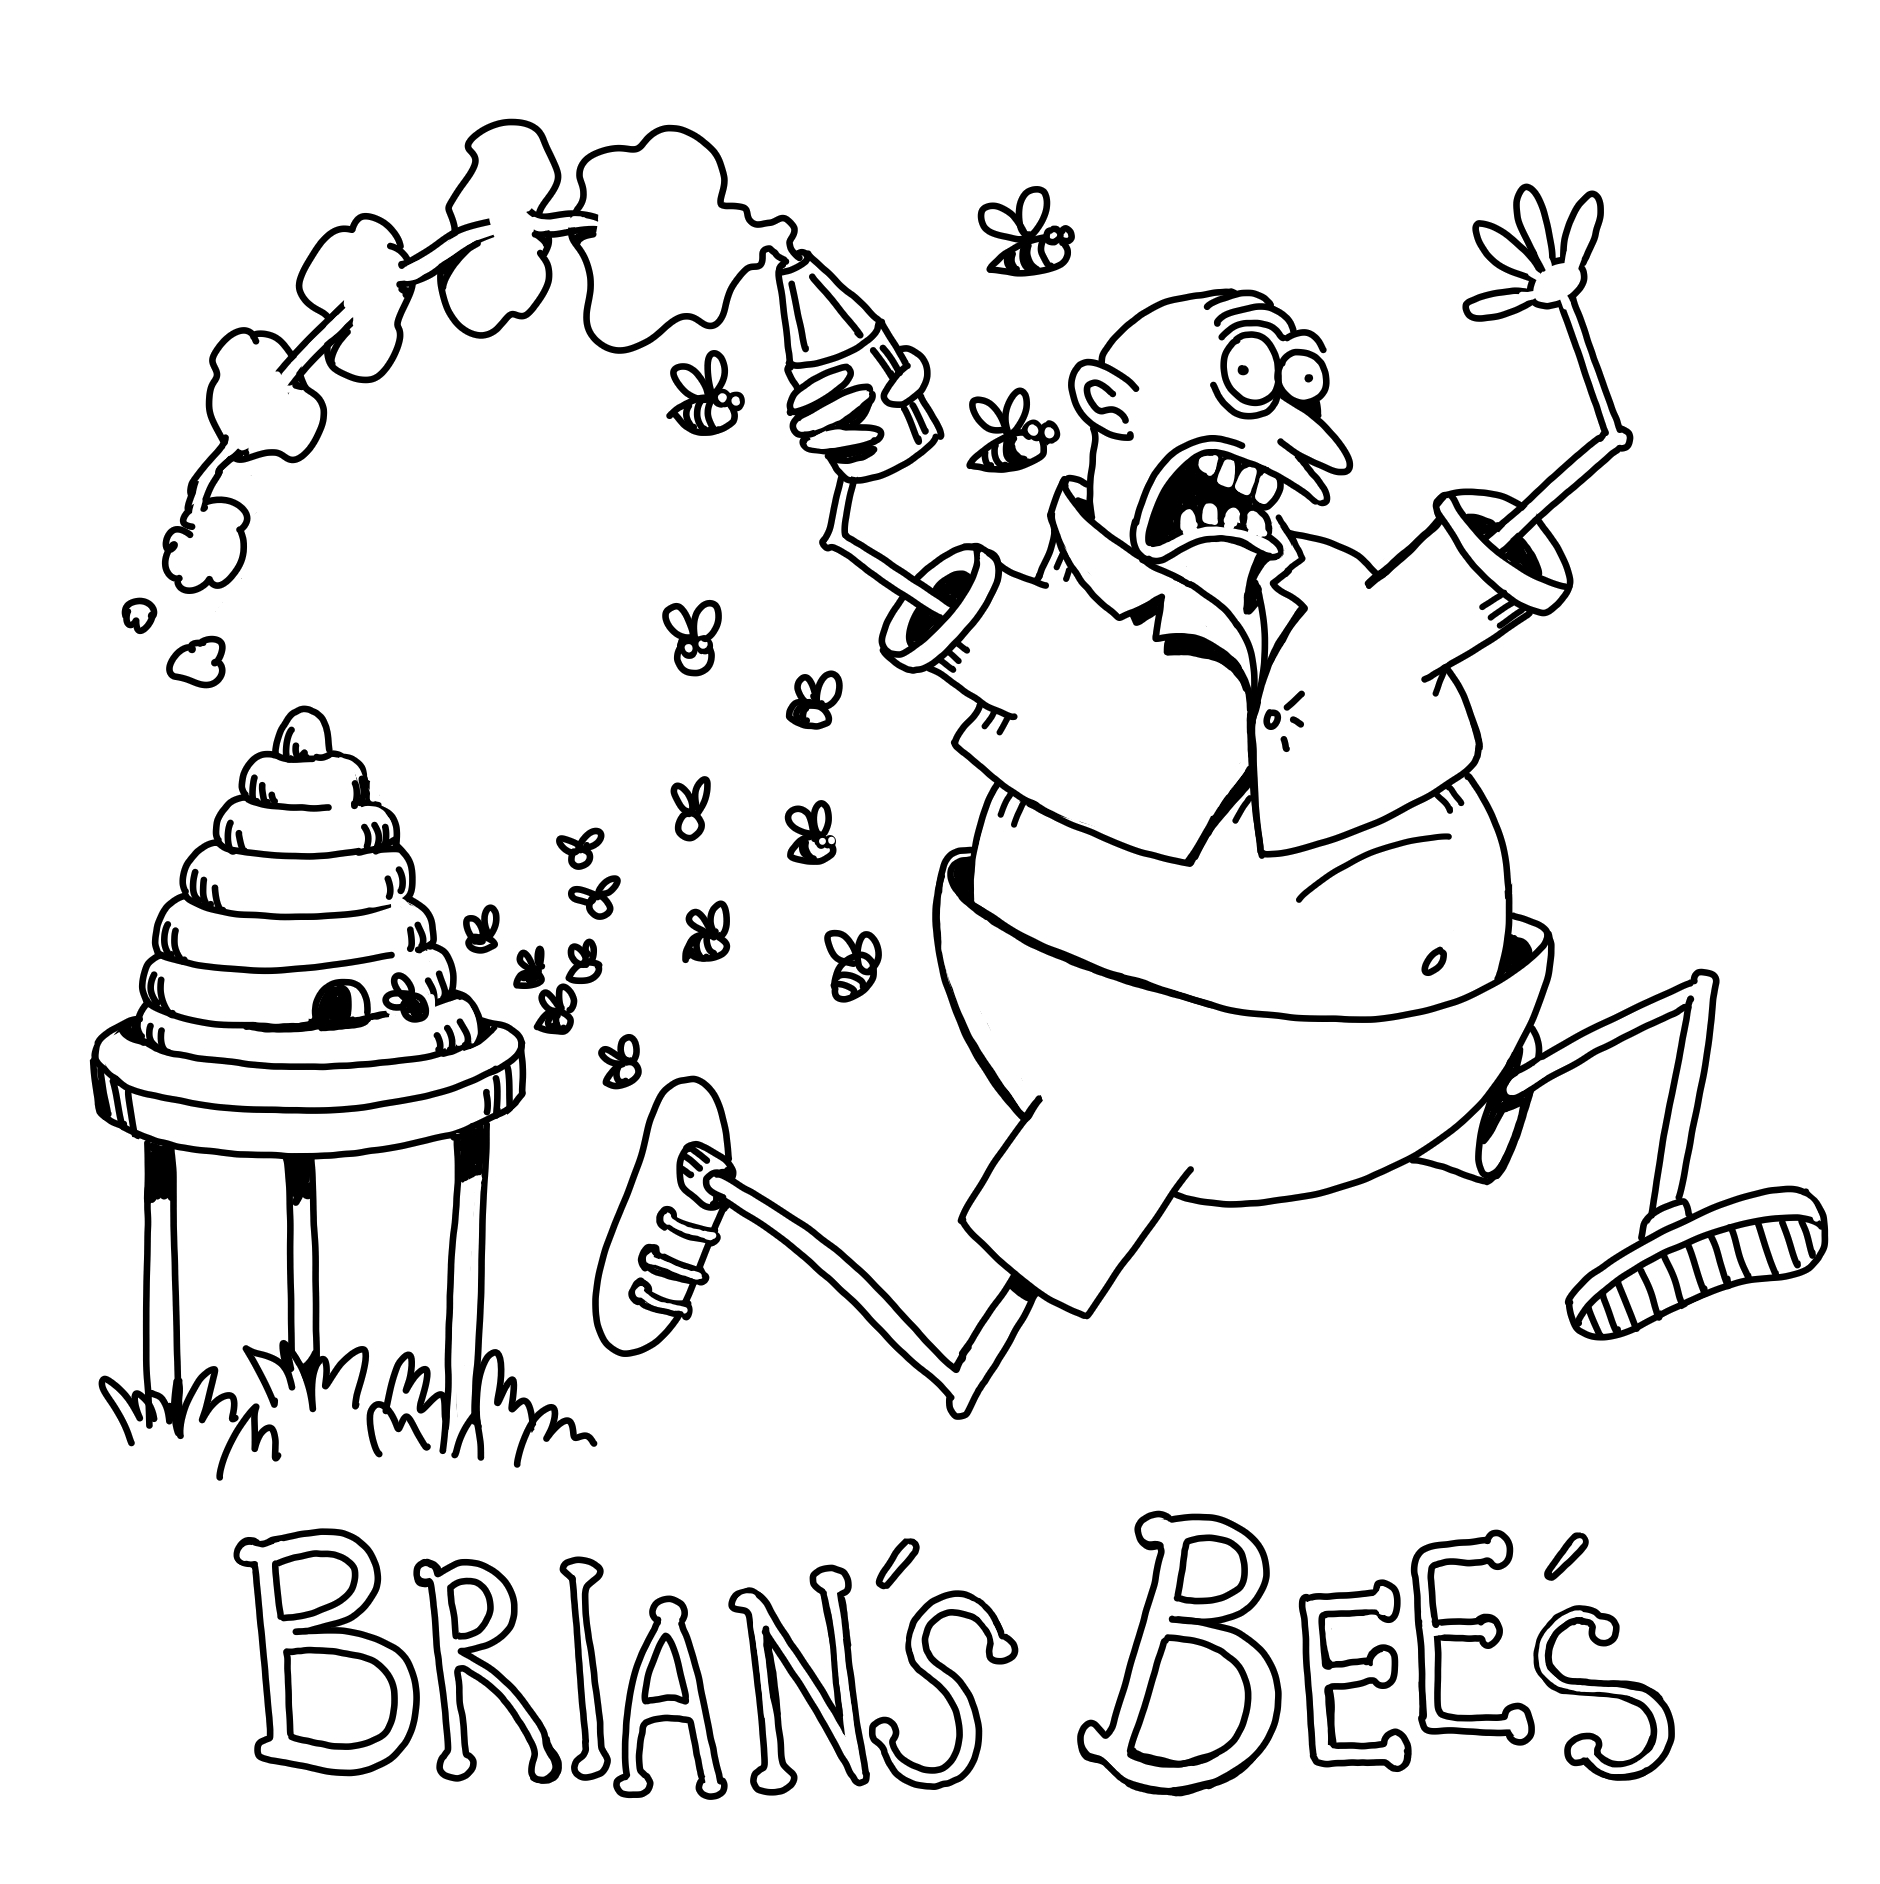 BRIAN'S BEES LOGO